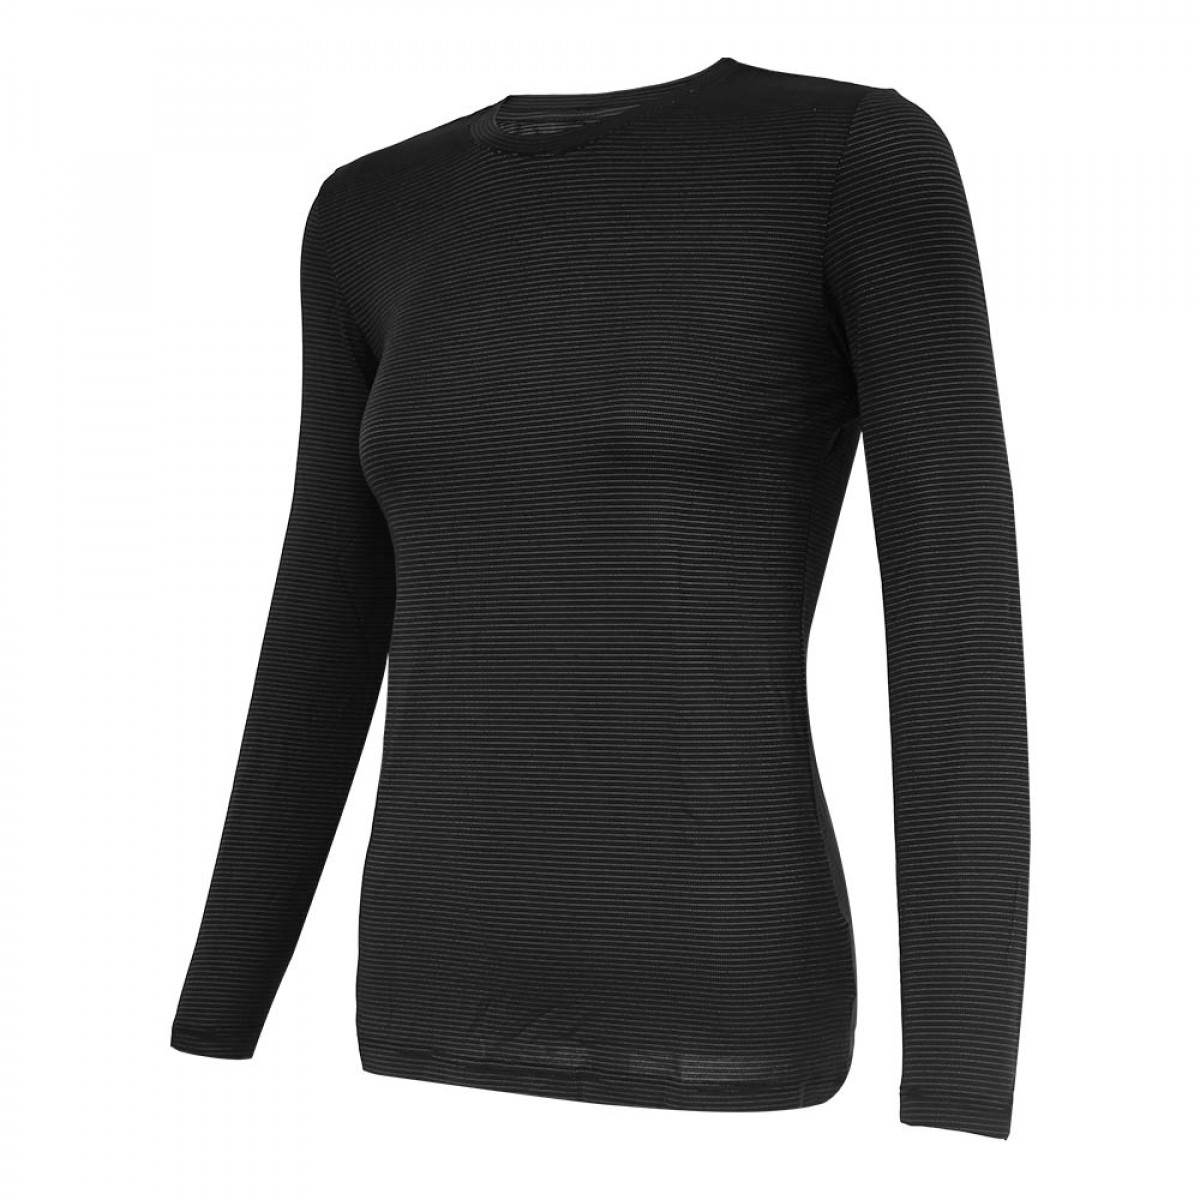 women-knitted-long-sleeve-t-shirt-kklst16945-8a